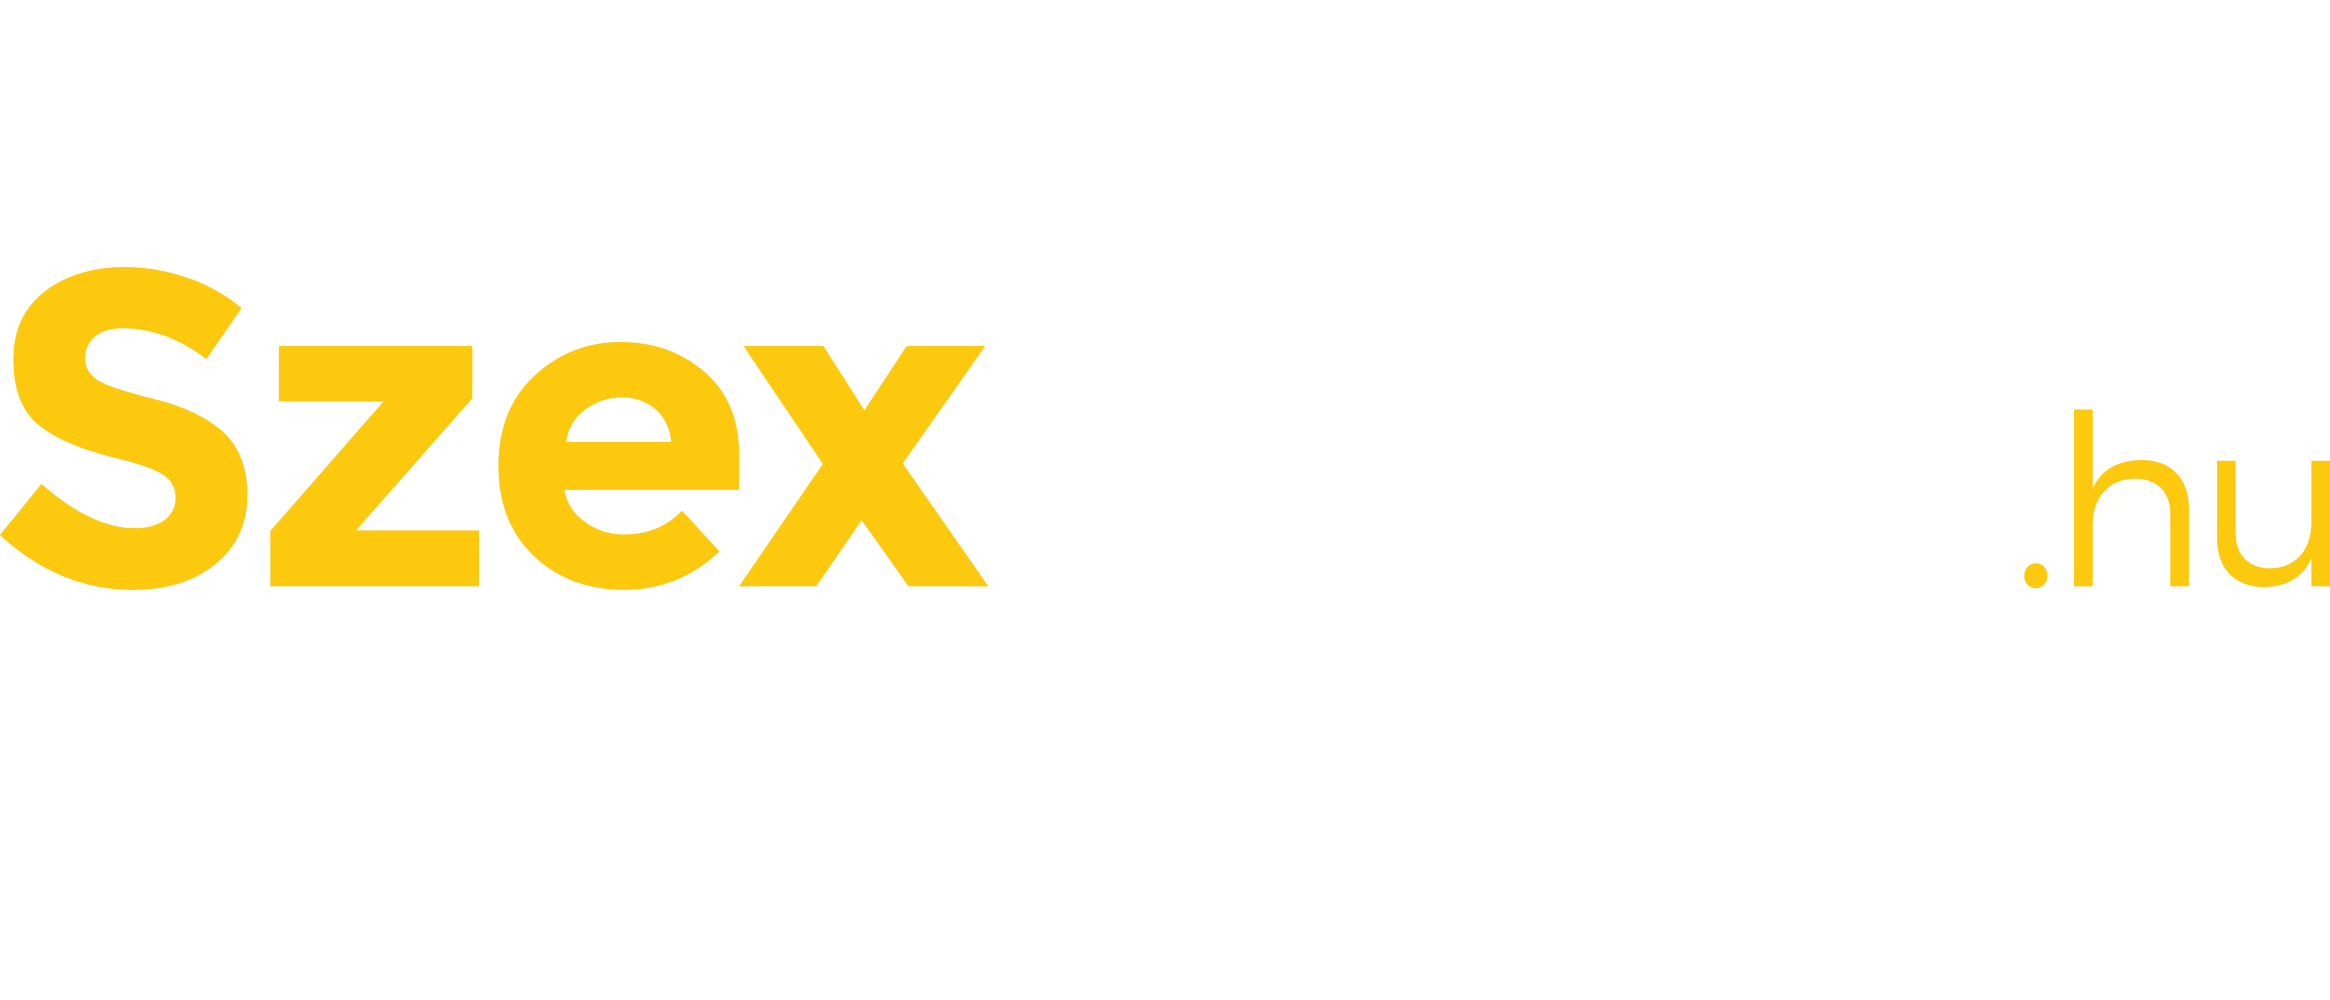 szexshop.hu